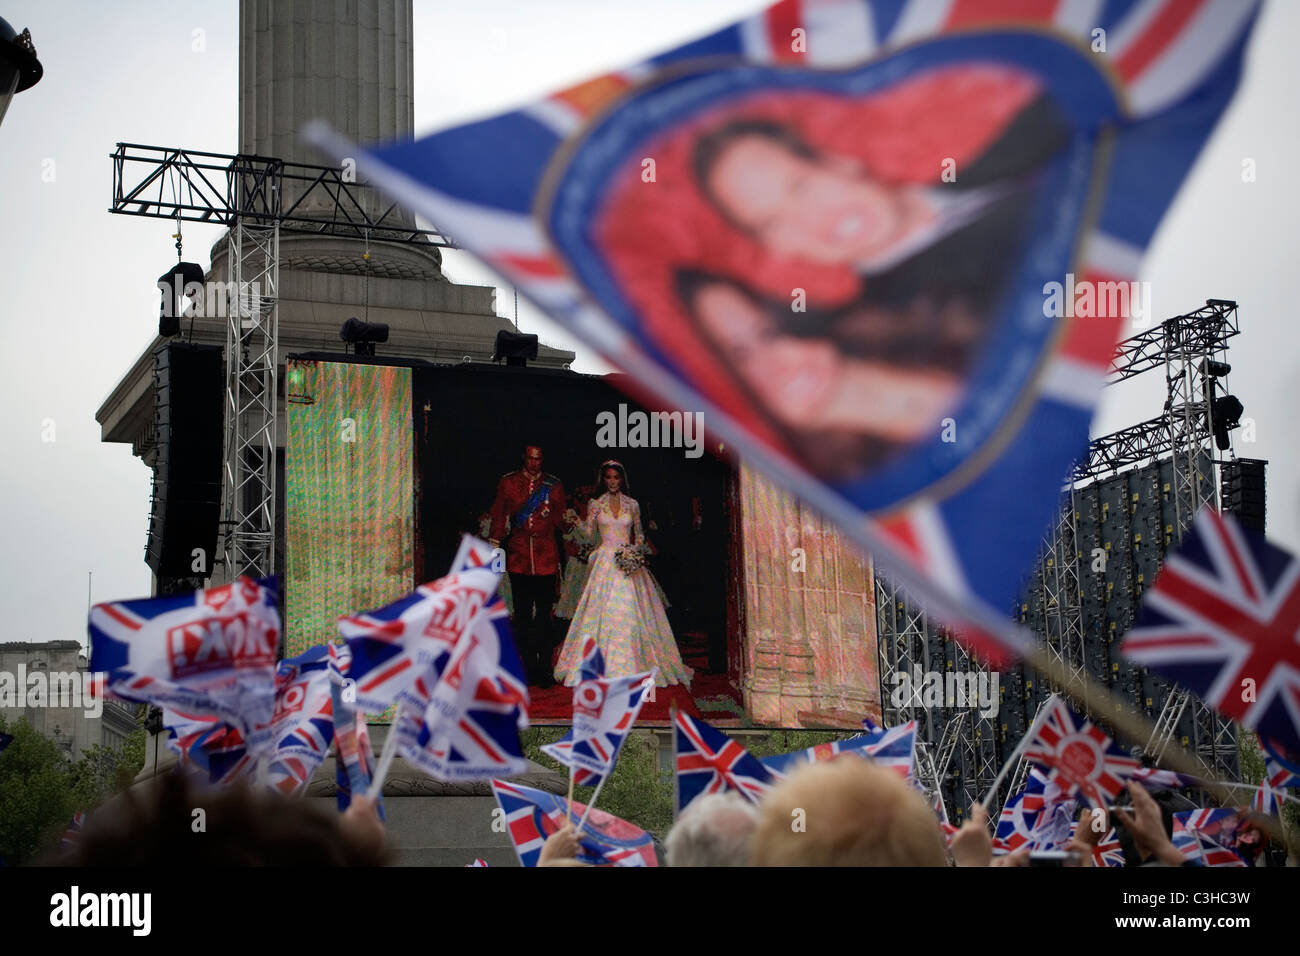 Tausende von Menschen nach der königlichen Hochzeit auf dem Bildschirm am Trafalgar Square, London, England, Großbritannien-UK Stockfoto